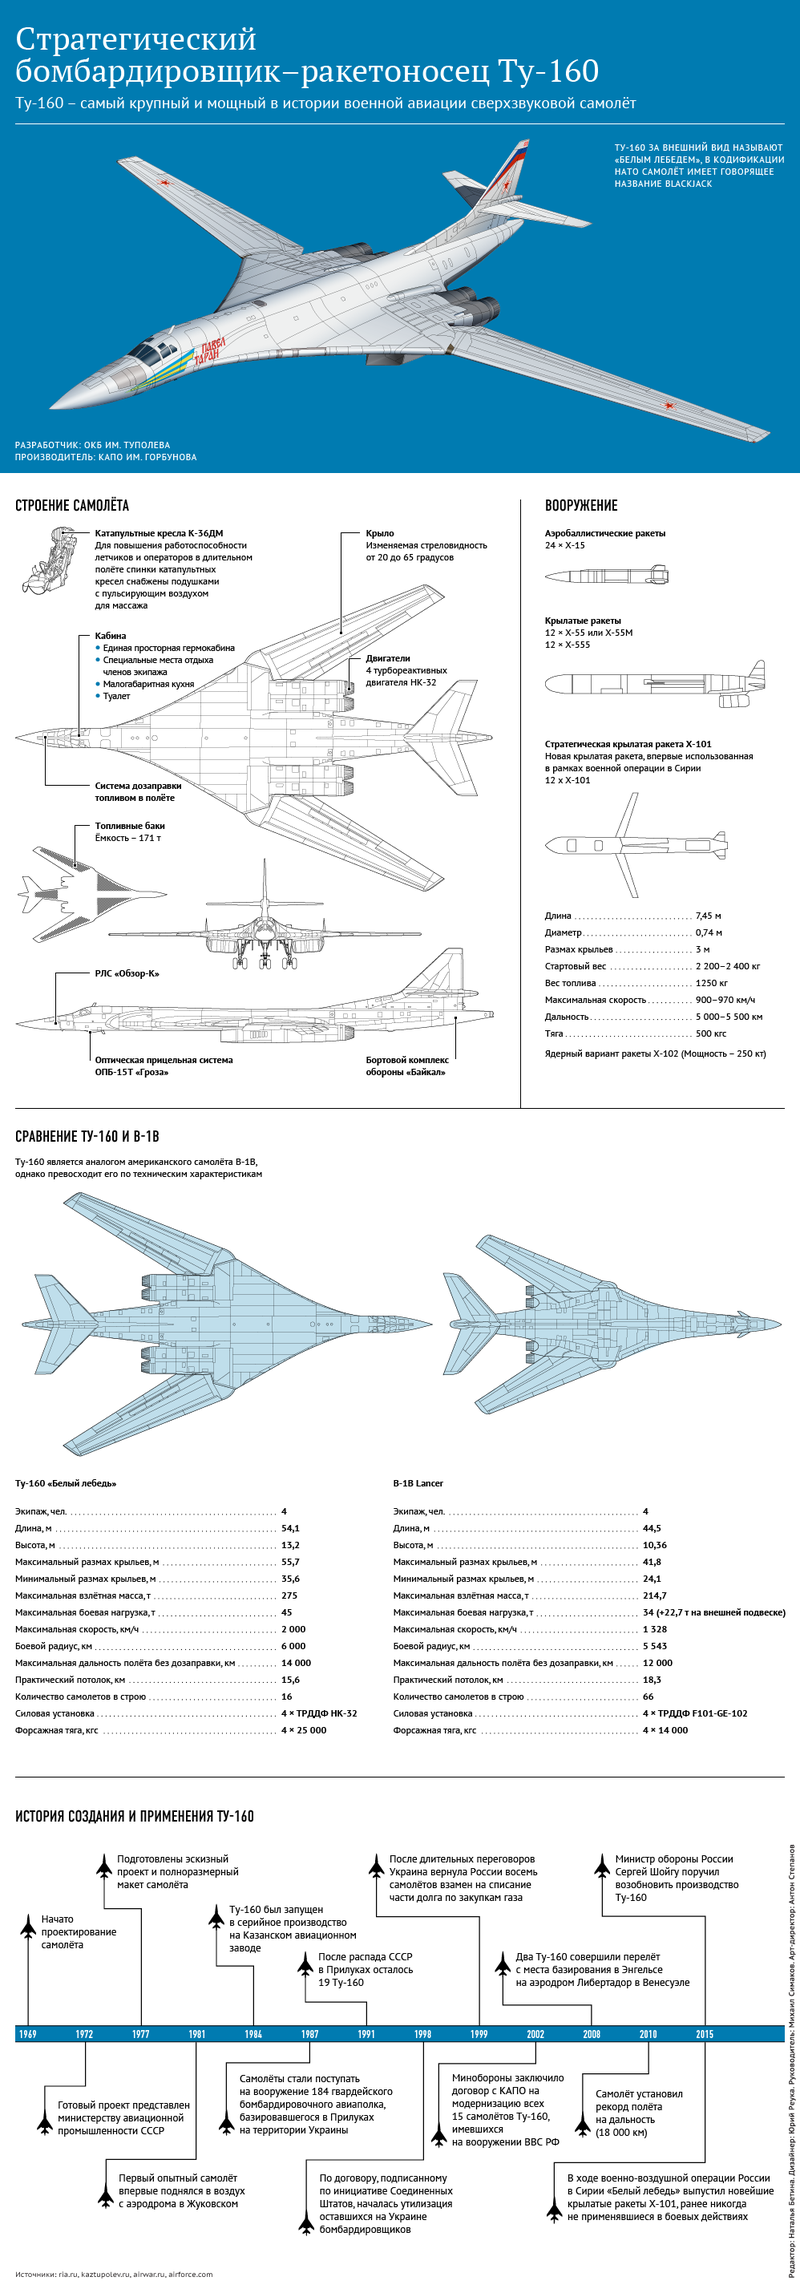 [Infographics] Tìm hiểu máy bay ném bom chiến lược 